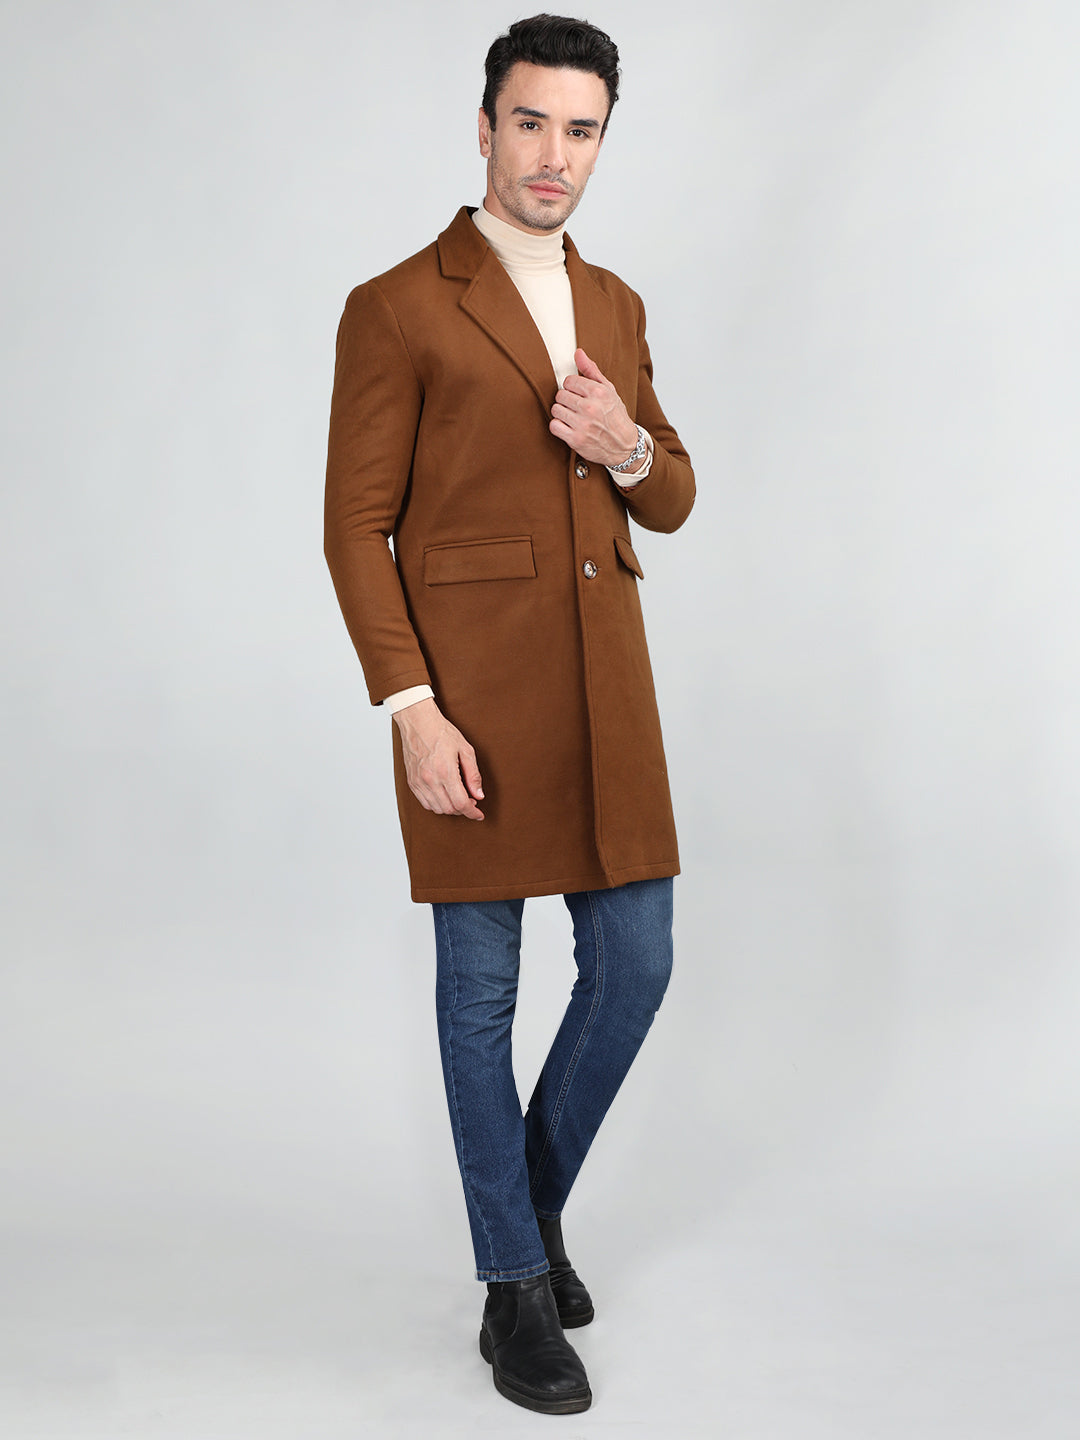 Men Woolen Tweed Overcoat